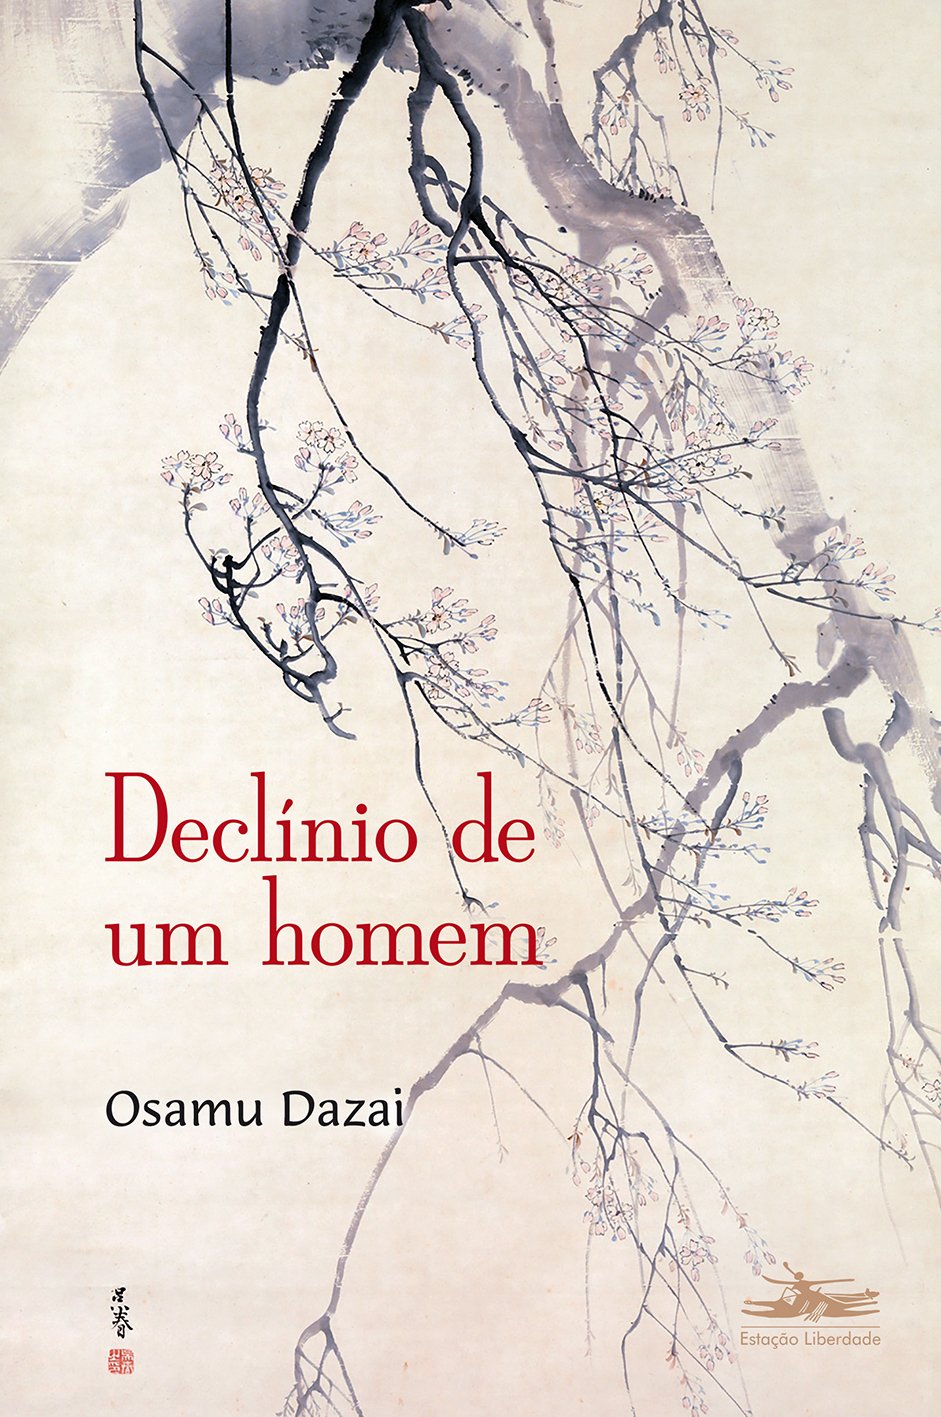 Osamu Dazai: Declínio de um homem (Paperback, Português language, 2015, Estação Liberdade)